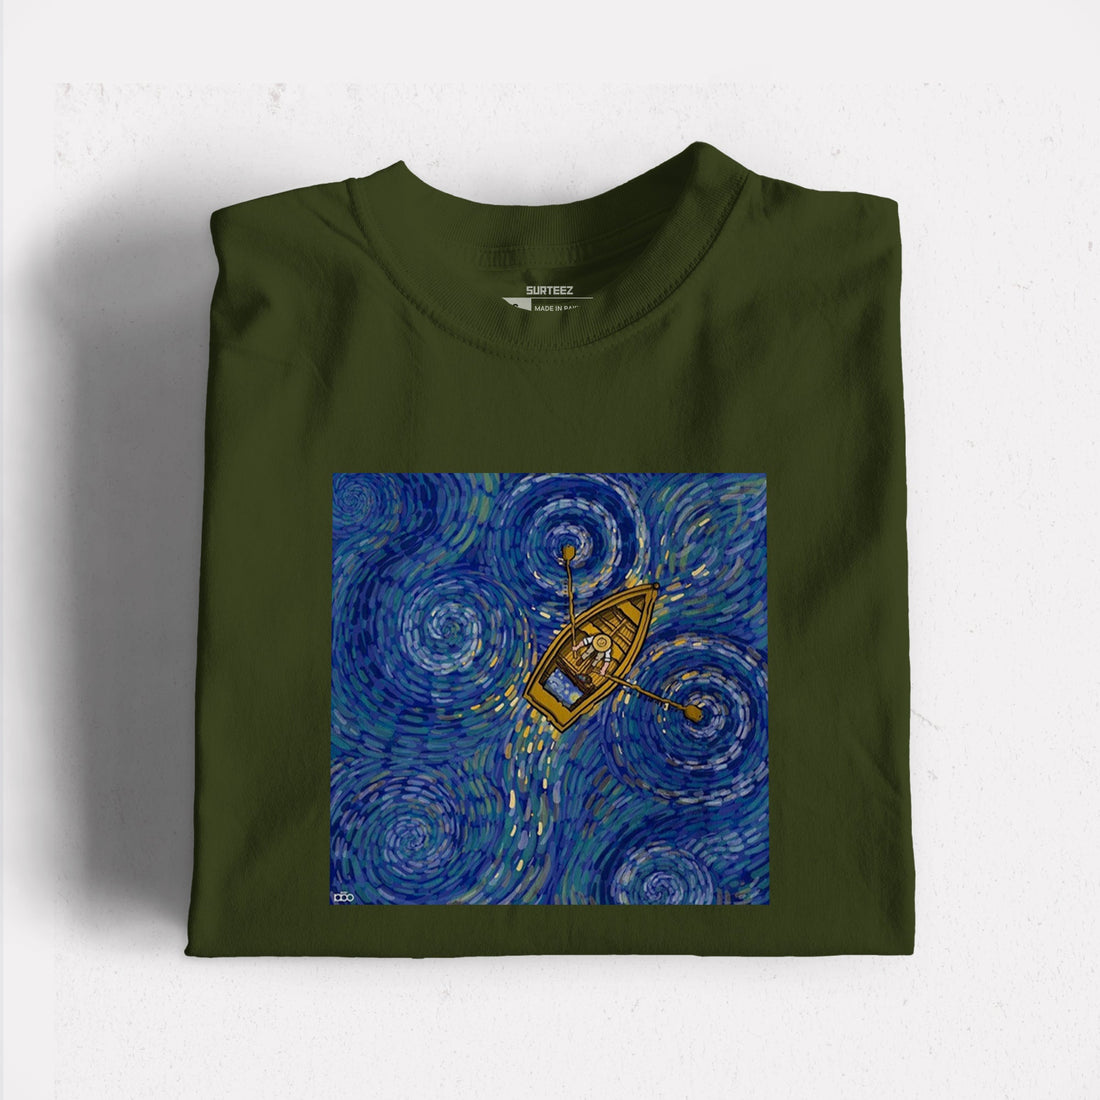 Van Gogh Starry Night Inspired Graphic Tshirt